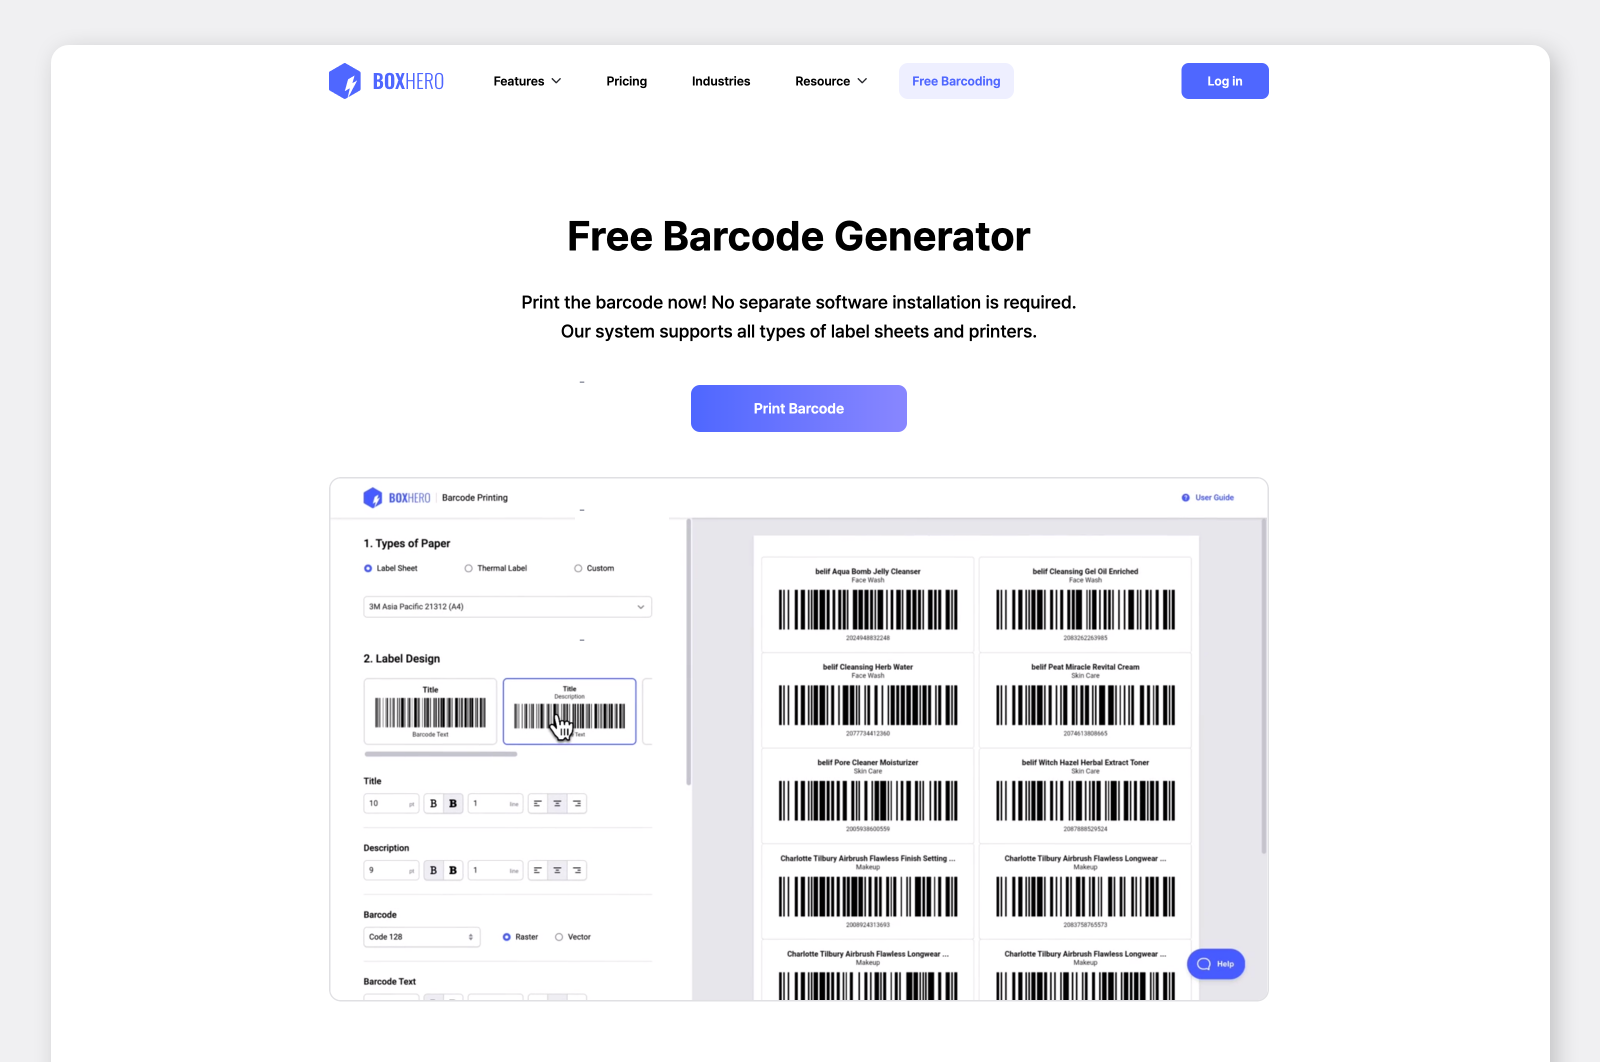 Free barcode generator webpage.